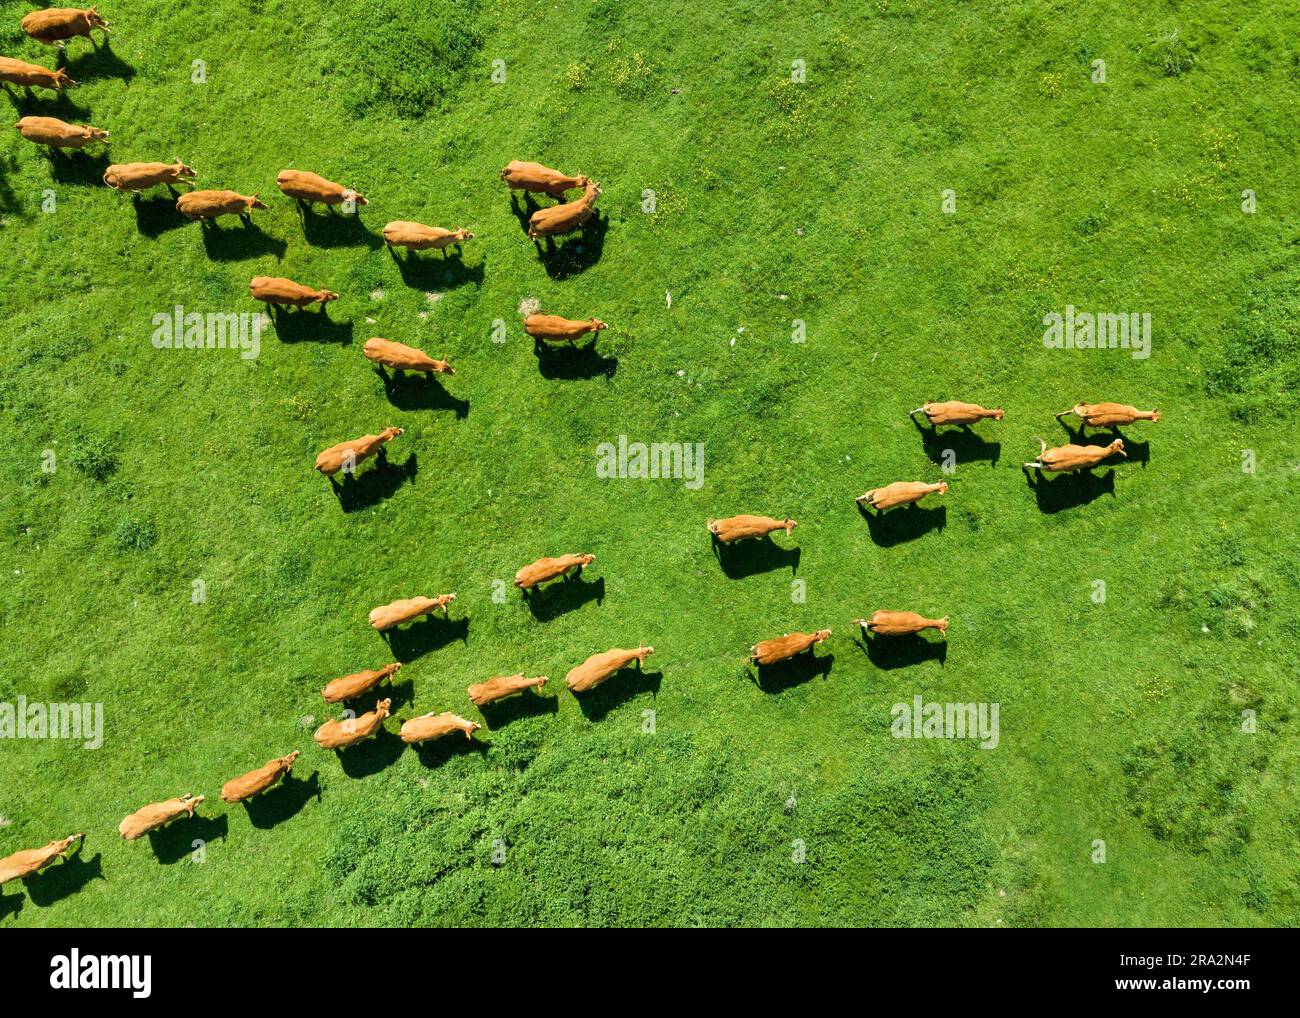 France, Eure, Saint Pierre la Garenne, Pressagny l'Orgueilleux, herd of cows (aerial view) Stock Photo